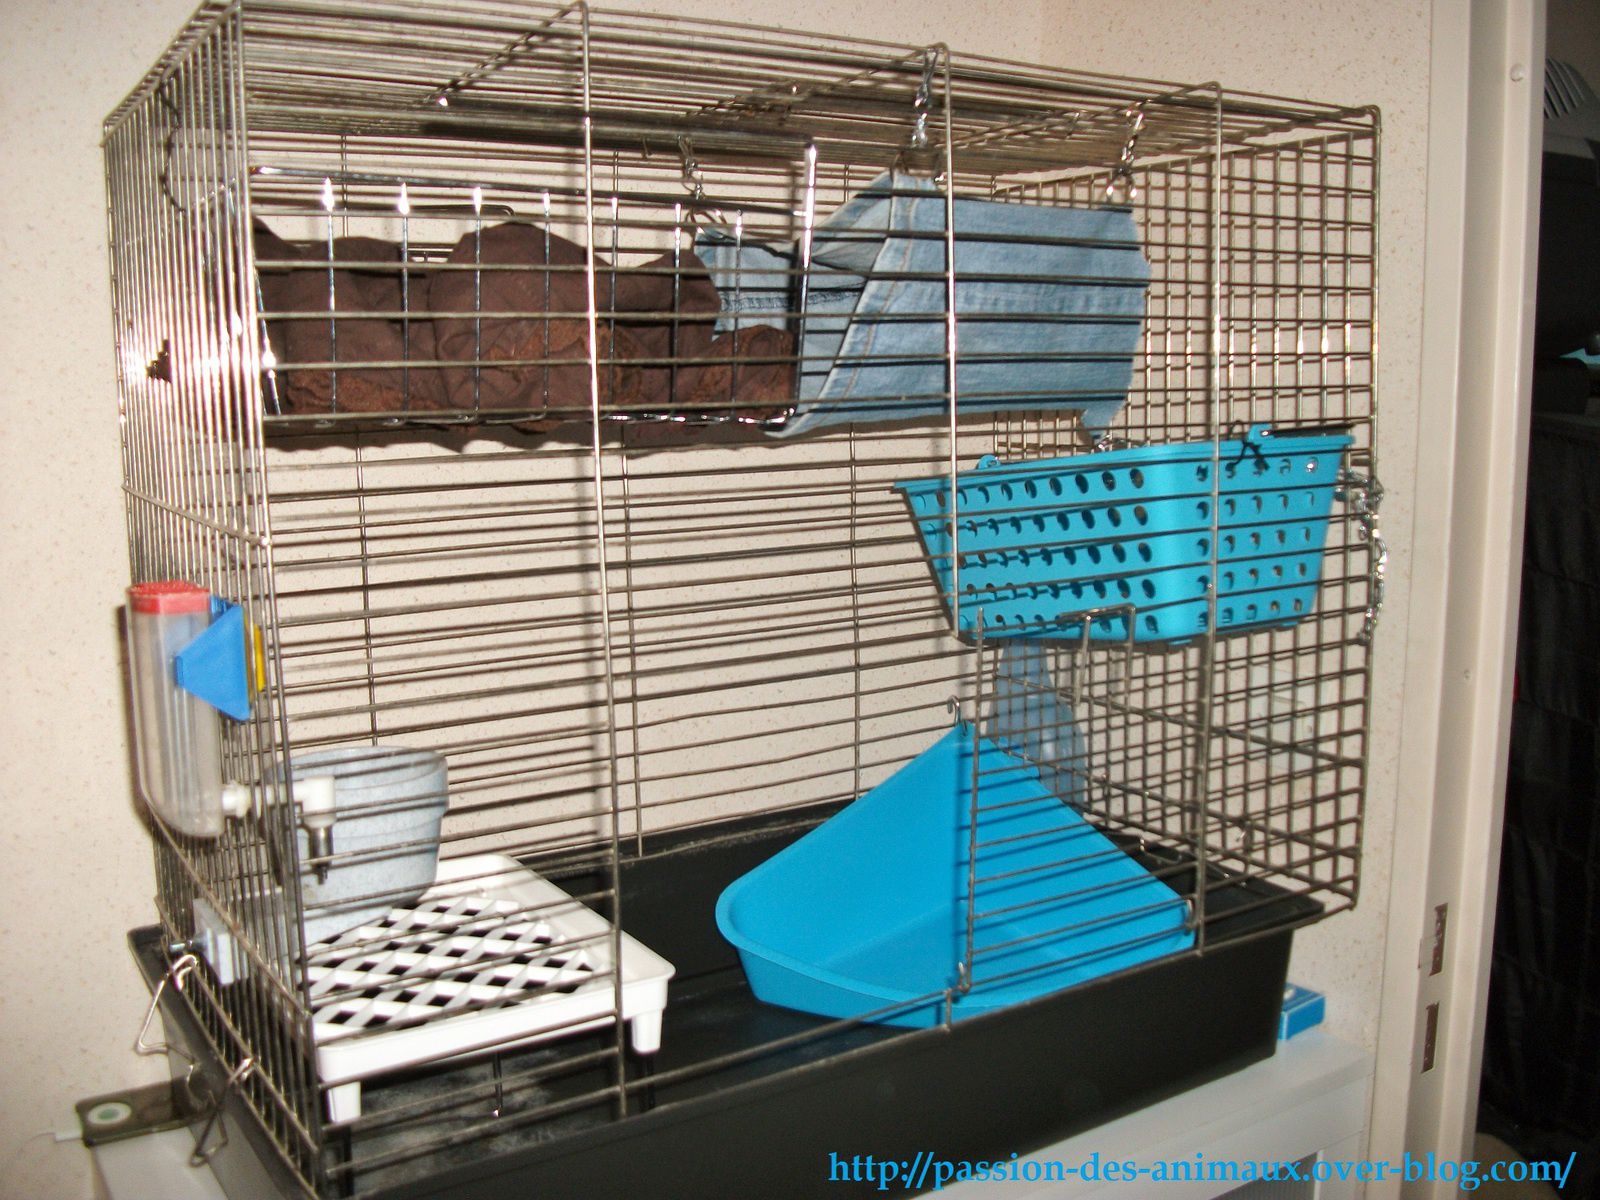 Bricolage : Aménager une cage pour rat - Le Blog de Passion.Animale